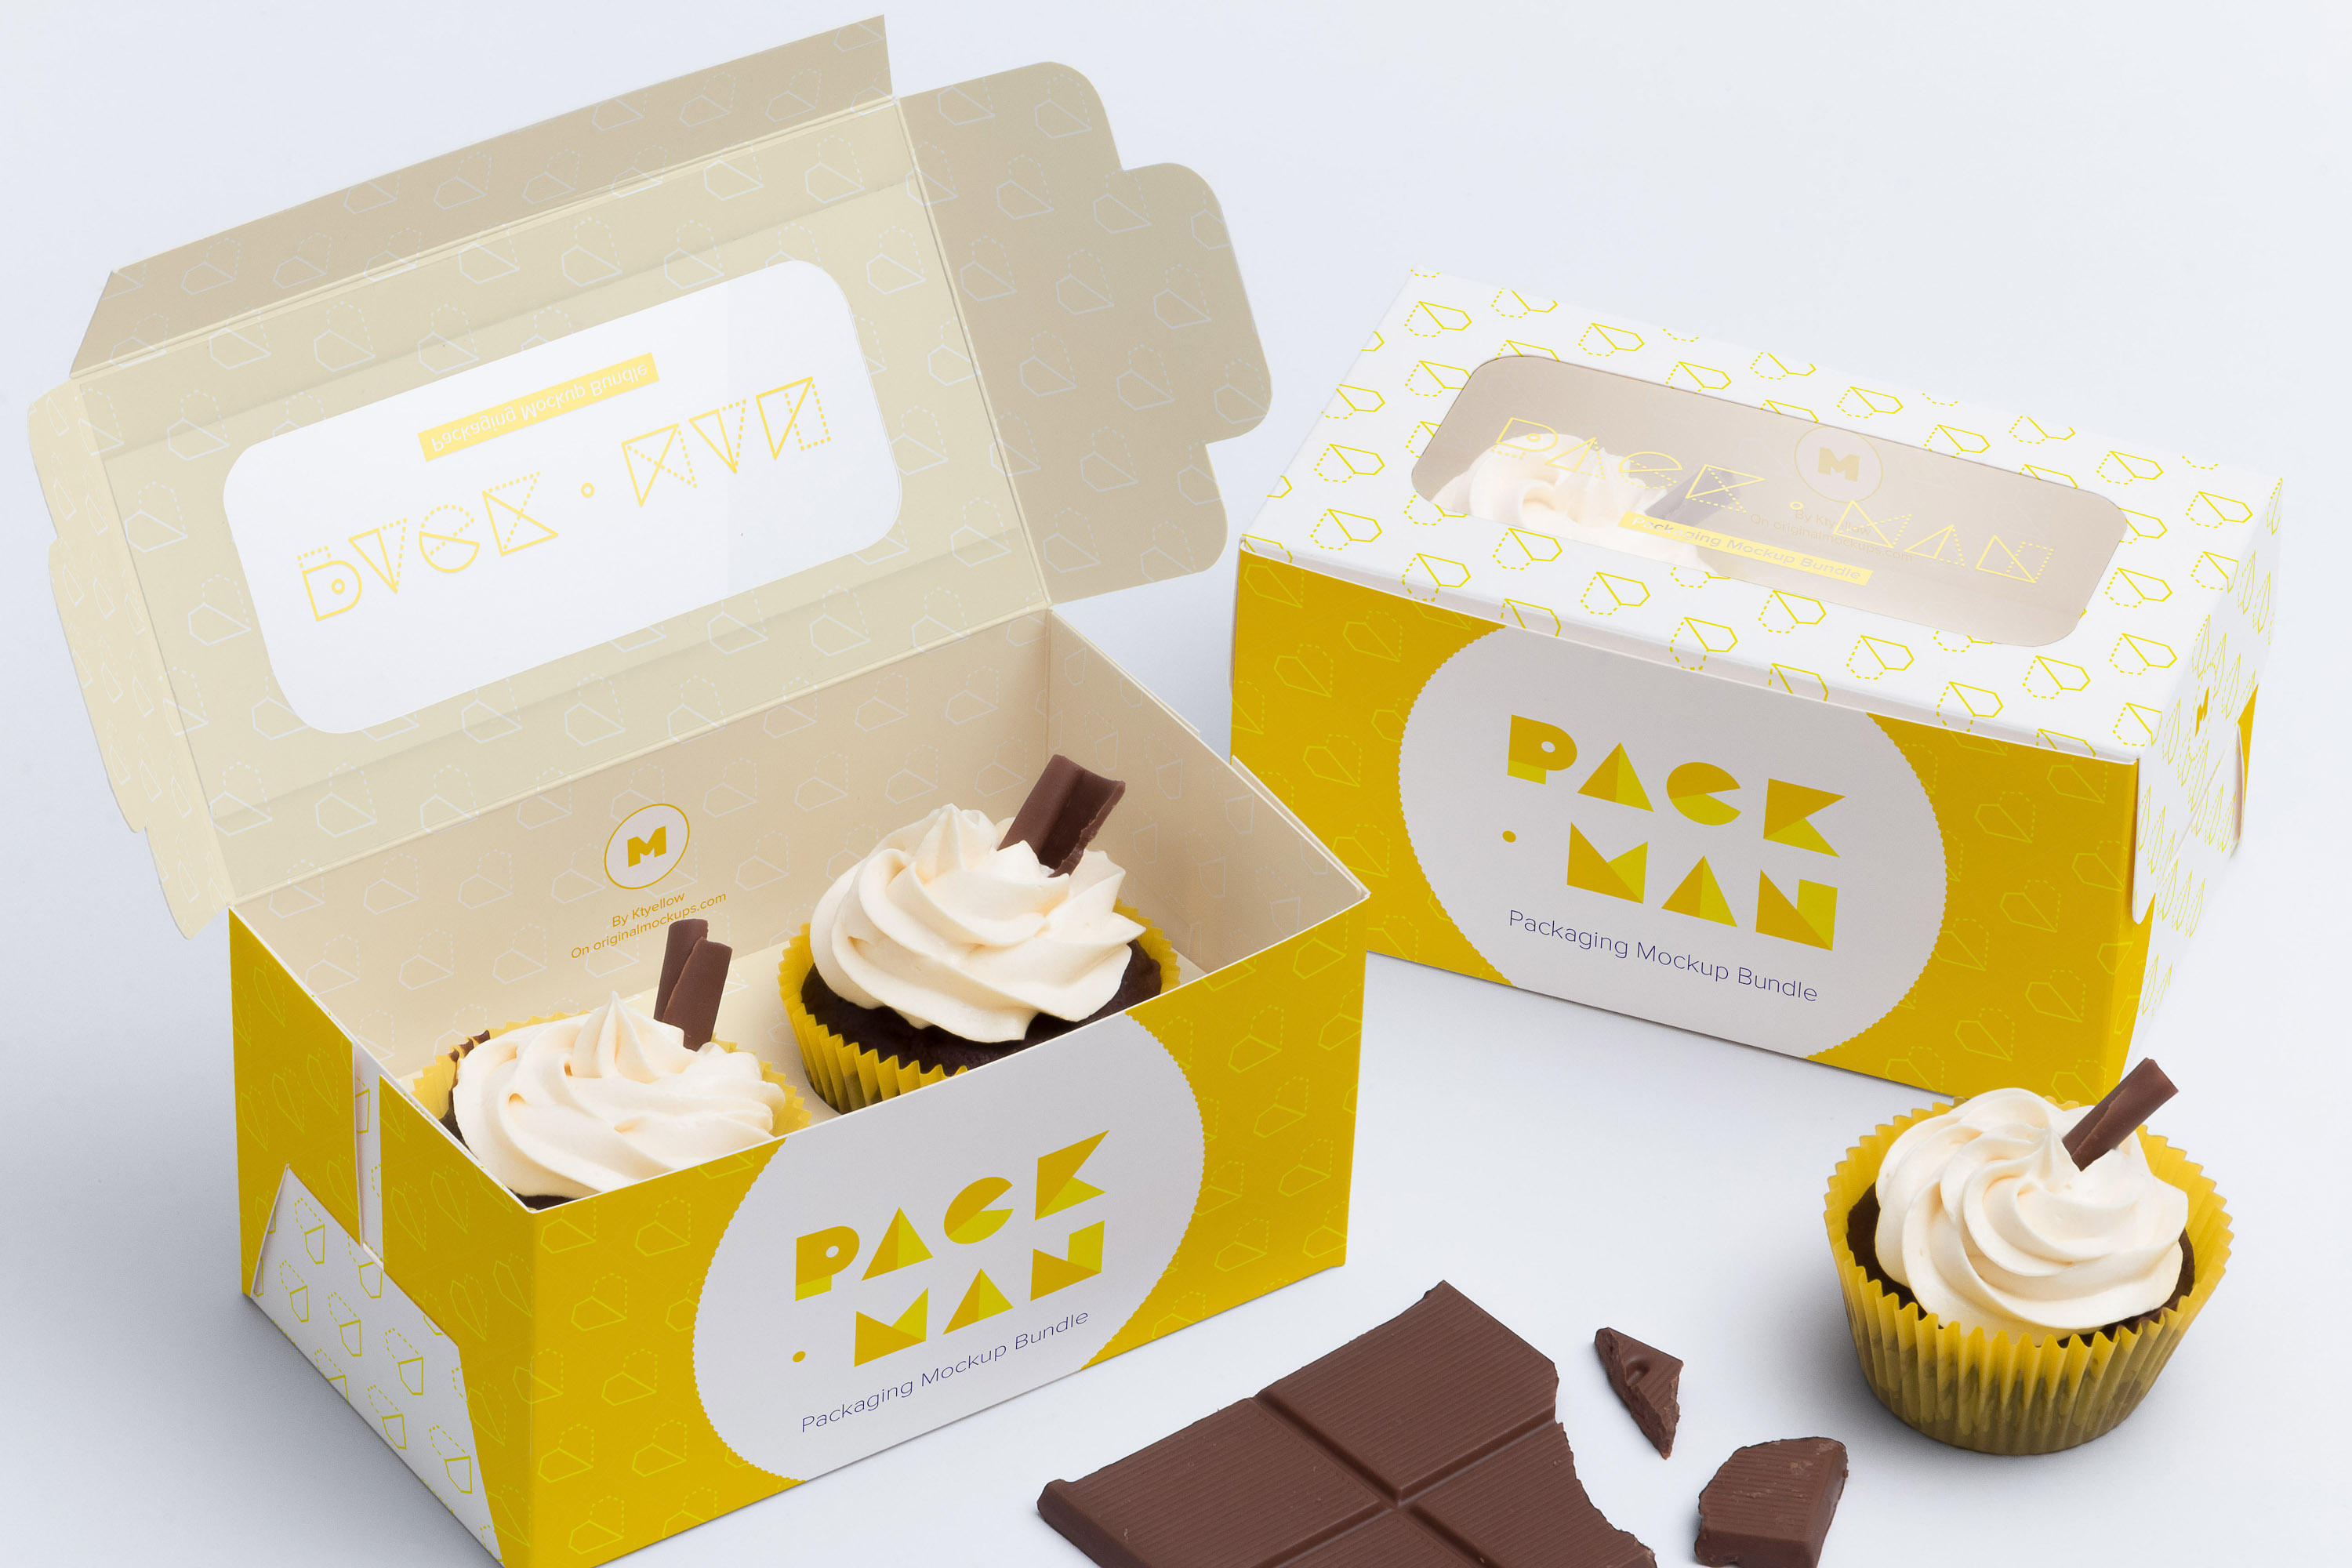 两只装纸杯蛋糕包装盒设计效果图样机01 Two Cupcake Box Mockup 01插图